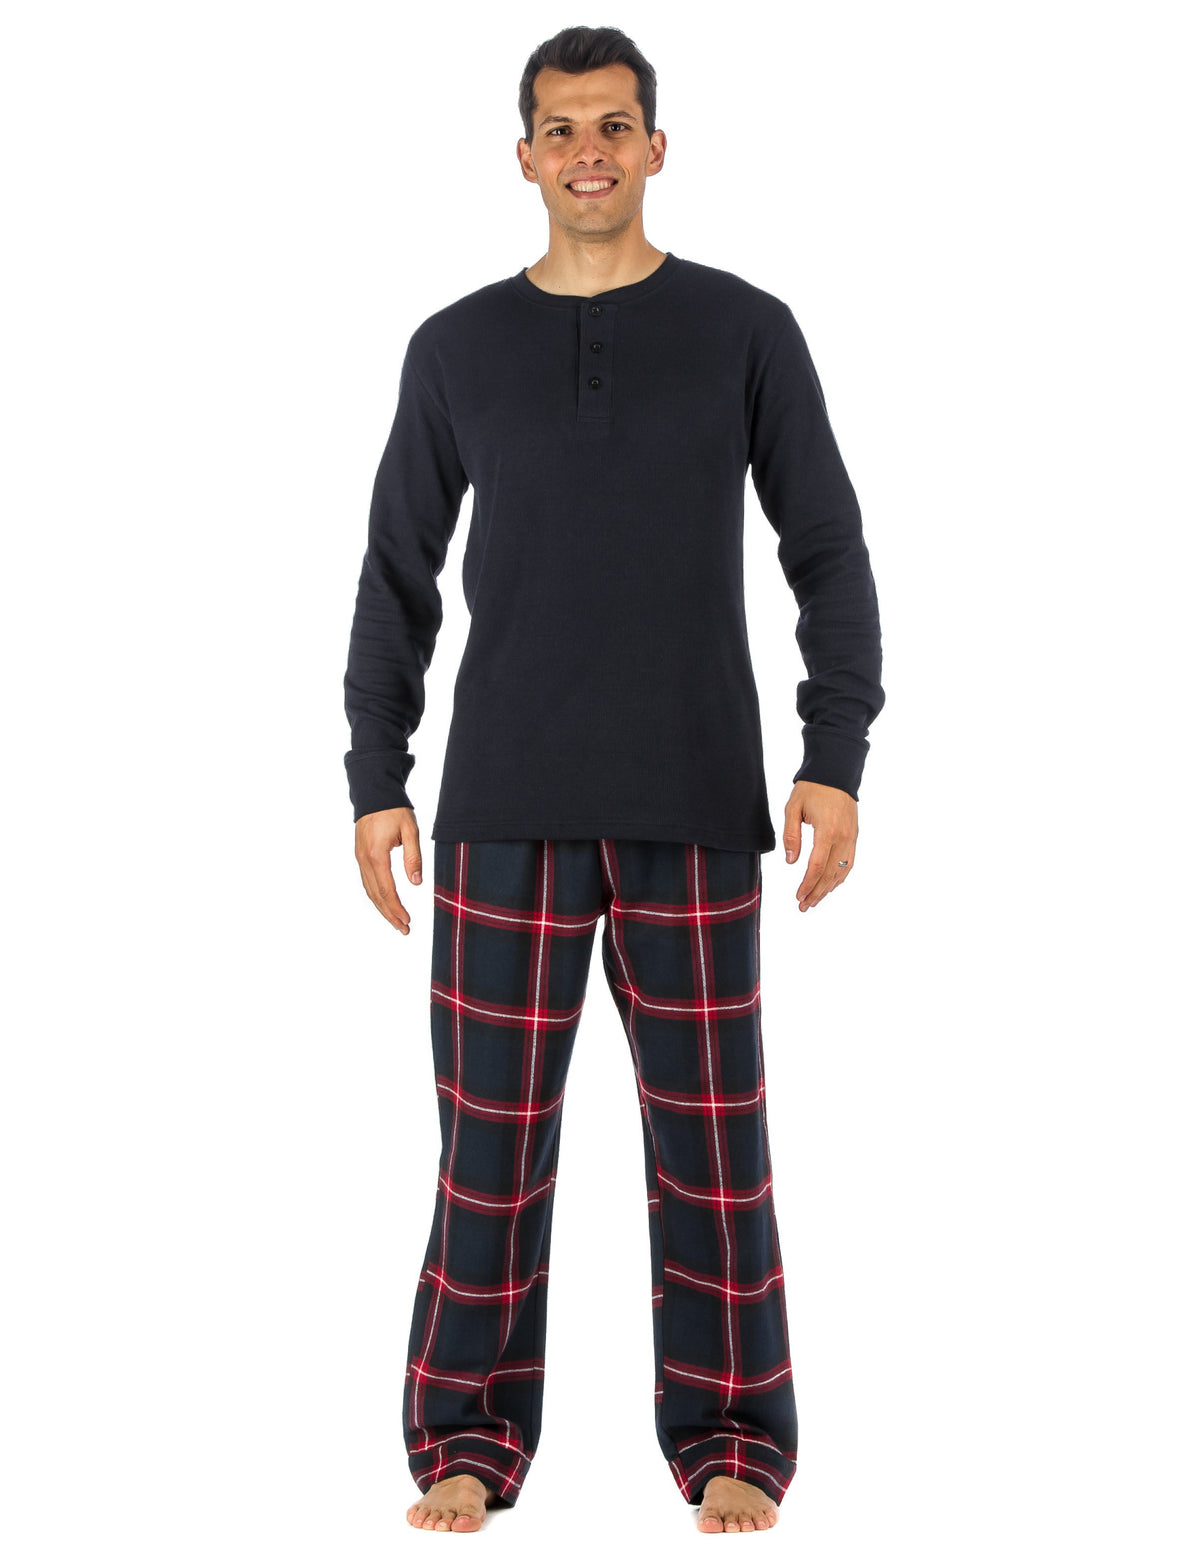 Mens Premium 100% Cotton Flannel Lounge Set - Black-Red Plaid